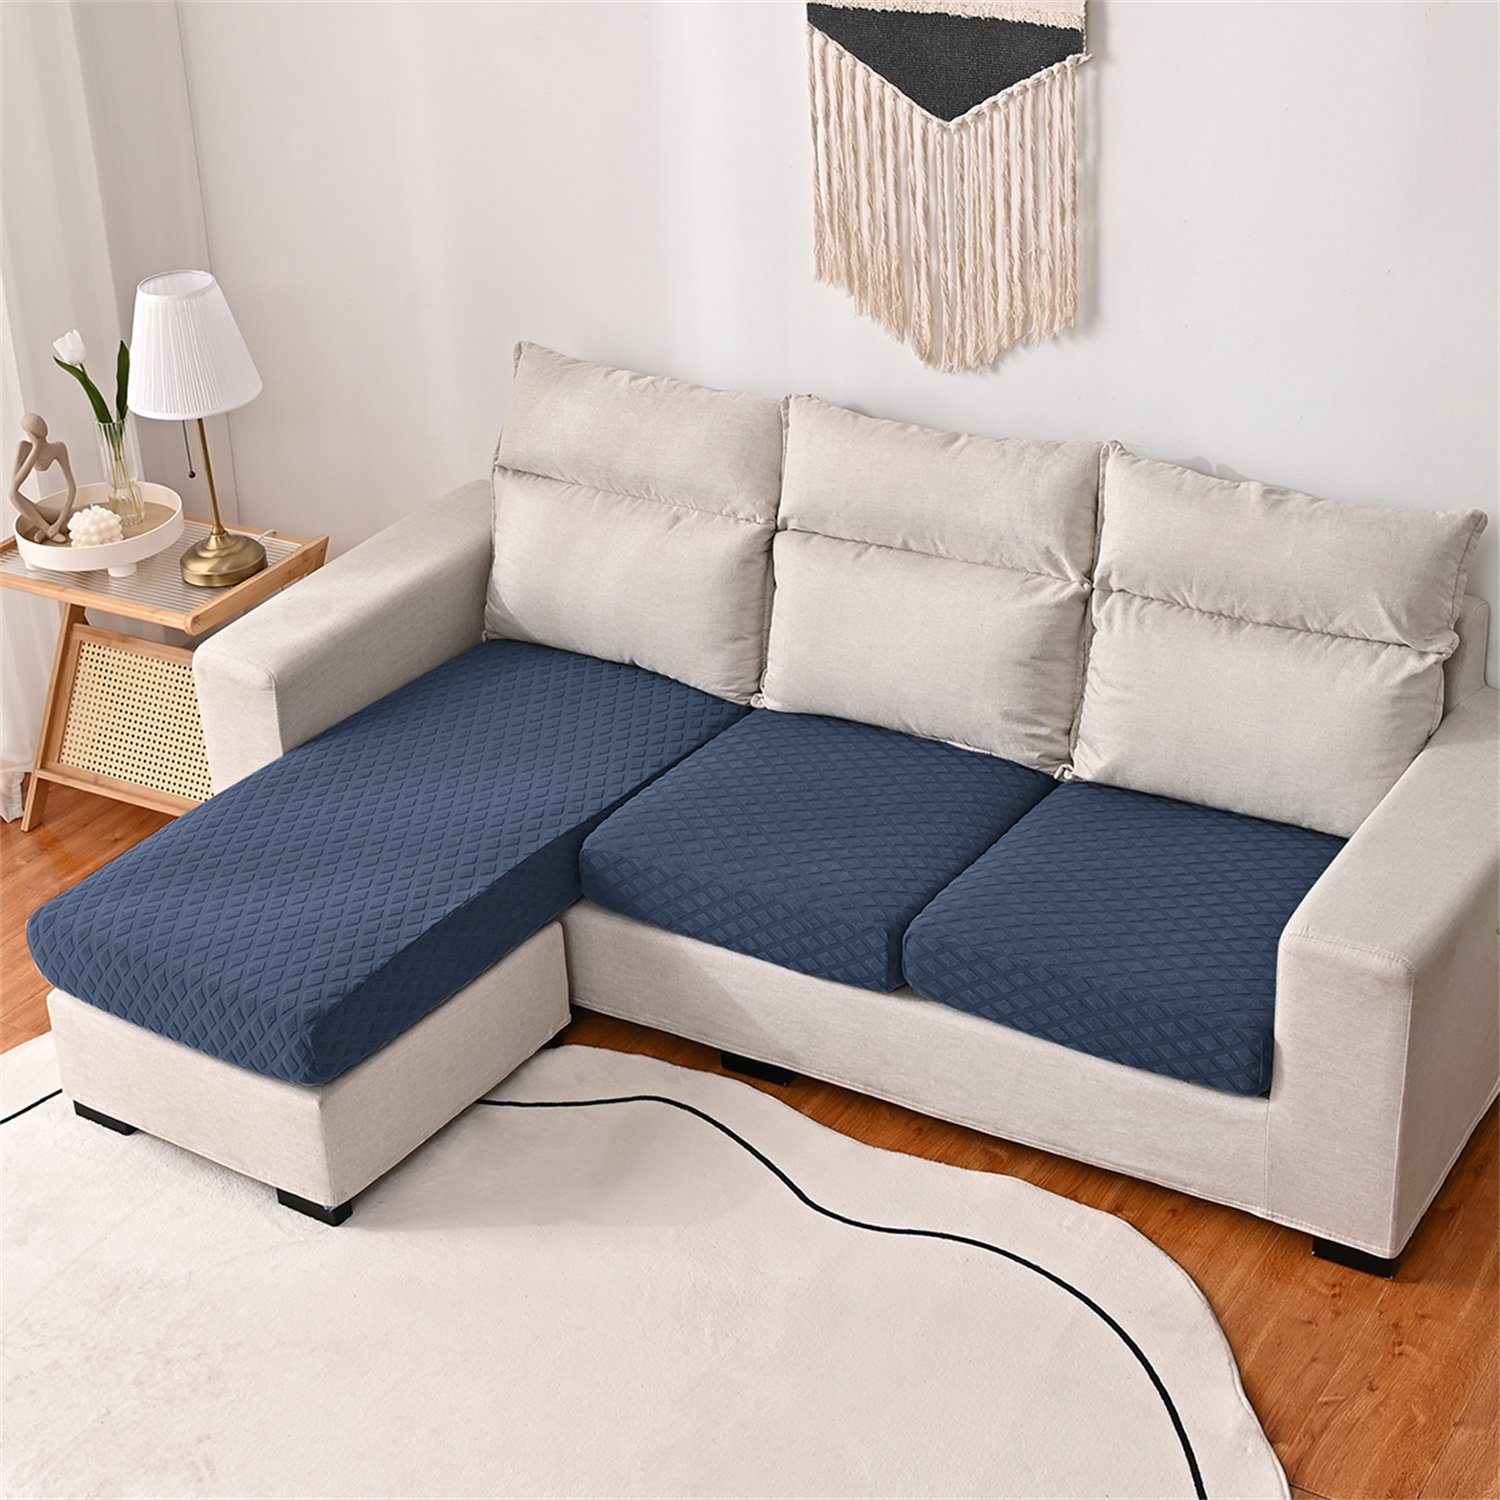 3DMuster Sofa-Sitzbezug wasserfest HOMEIDEAS, elastischer mit Navy Sofahusse, Blau